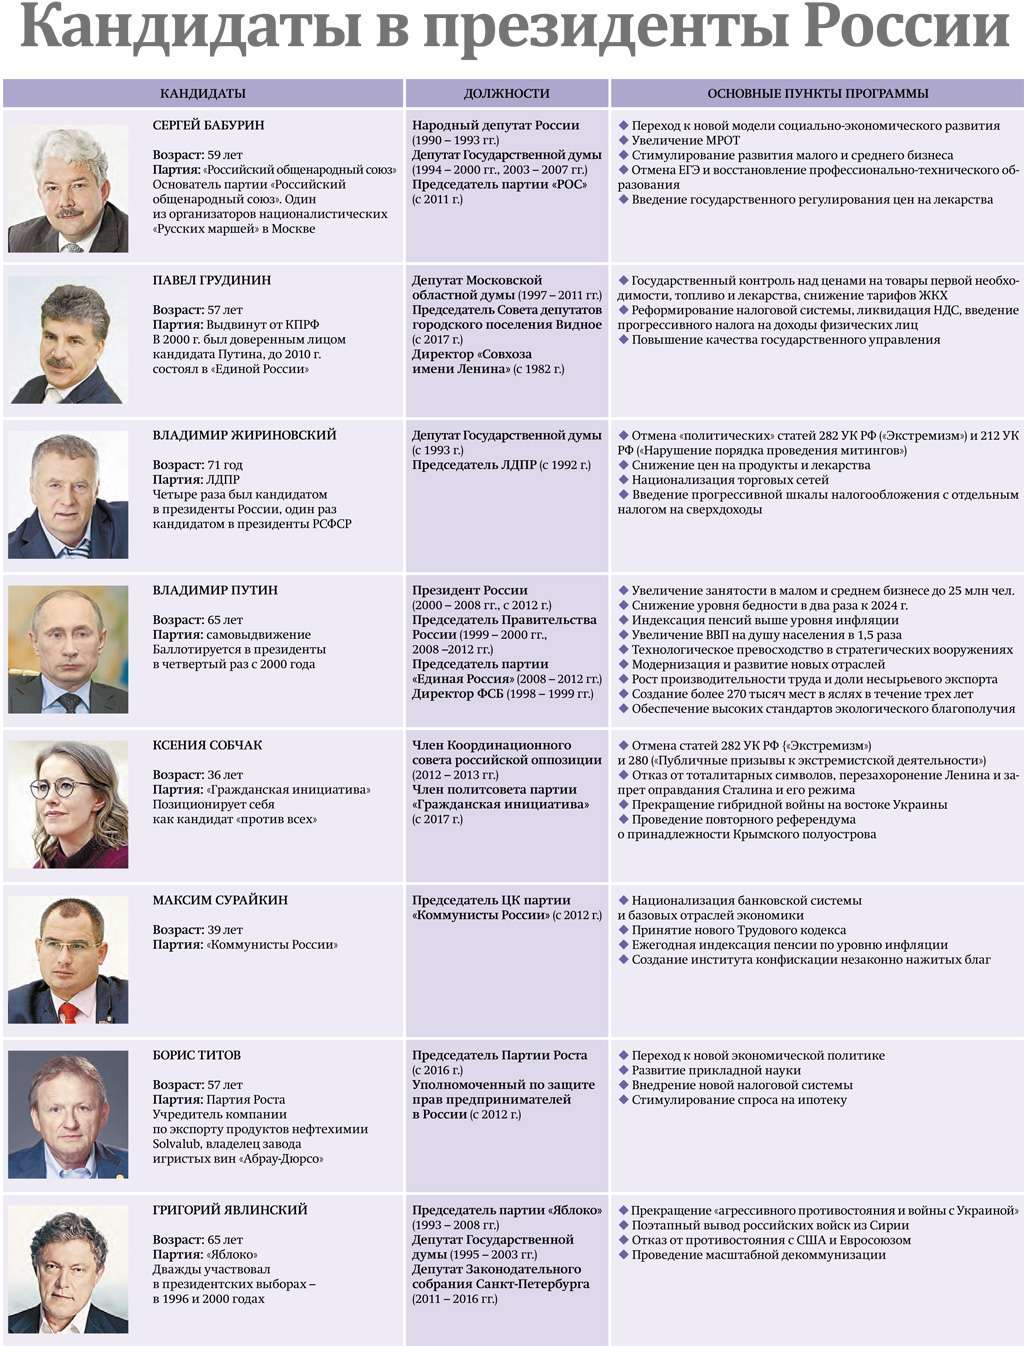 Зарегистрированные кандидаты на выборах президента рф